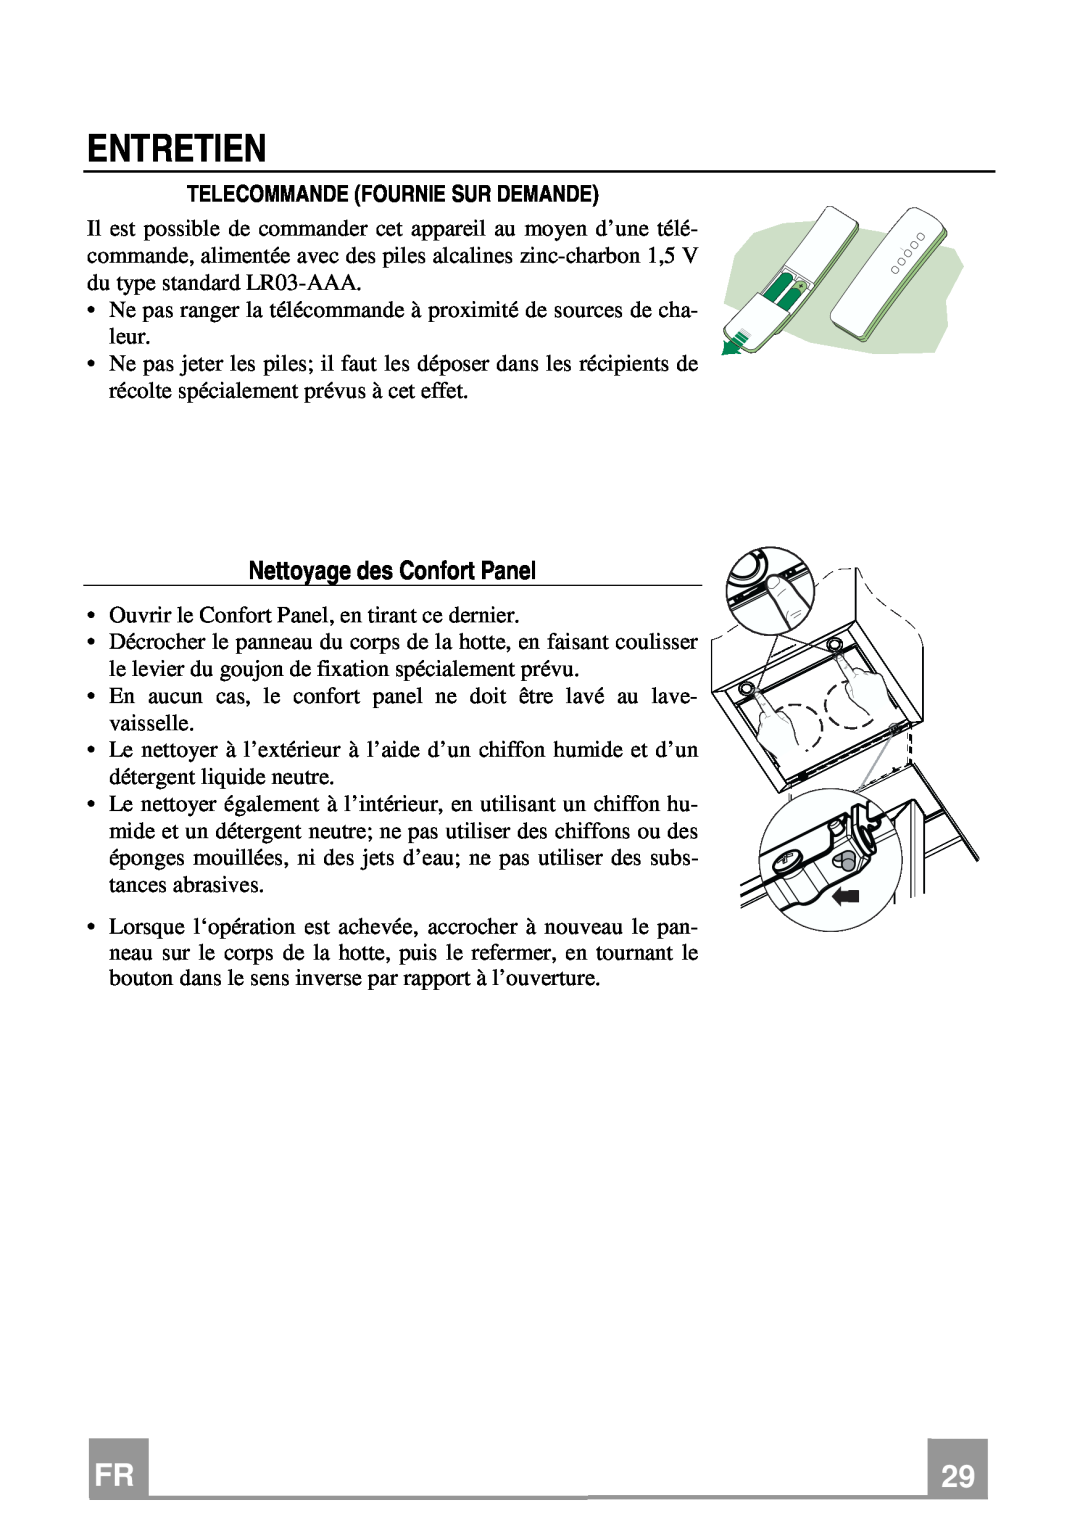 Franke Consumer Products FCR 708-H TC manual Entretien, Nettoyage des Confort Panel, Telecommande Fournie Sur Demande 